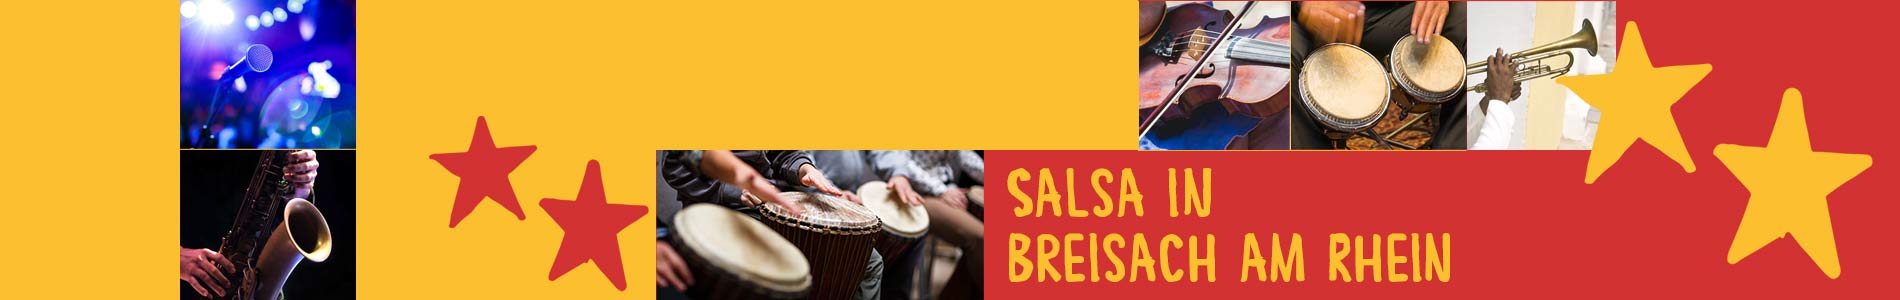 Salsa in Breisach am Rhein – Salsa lernen und tanzen, Tanzkurse, Partys, Veranstaltungen